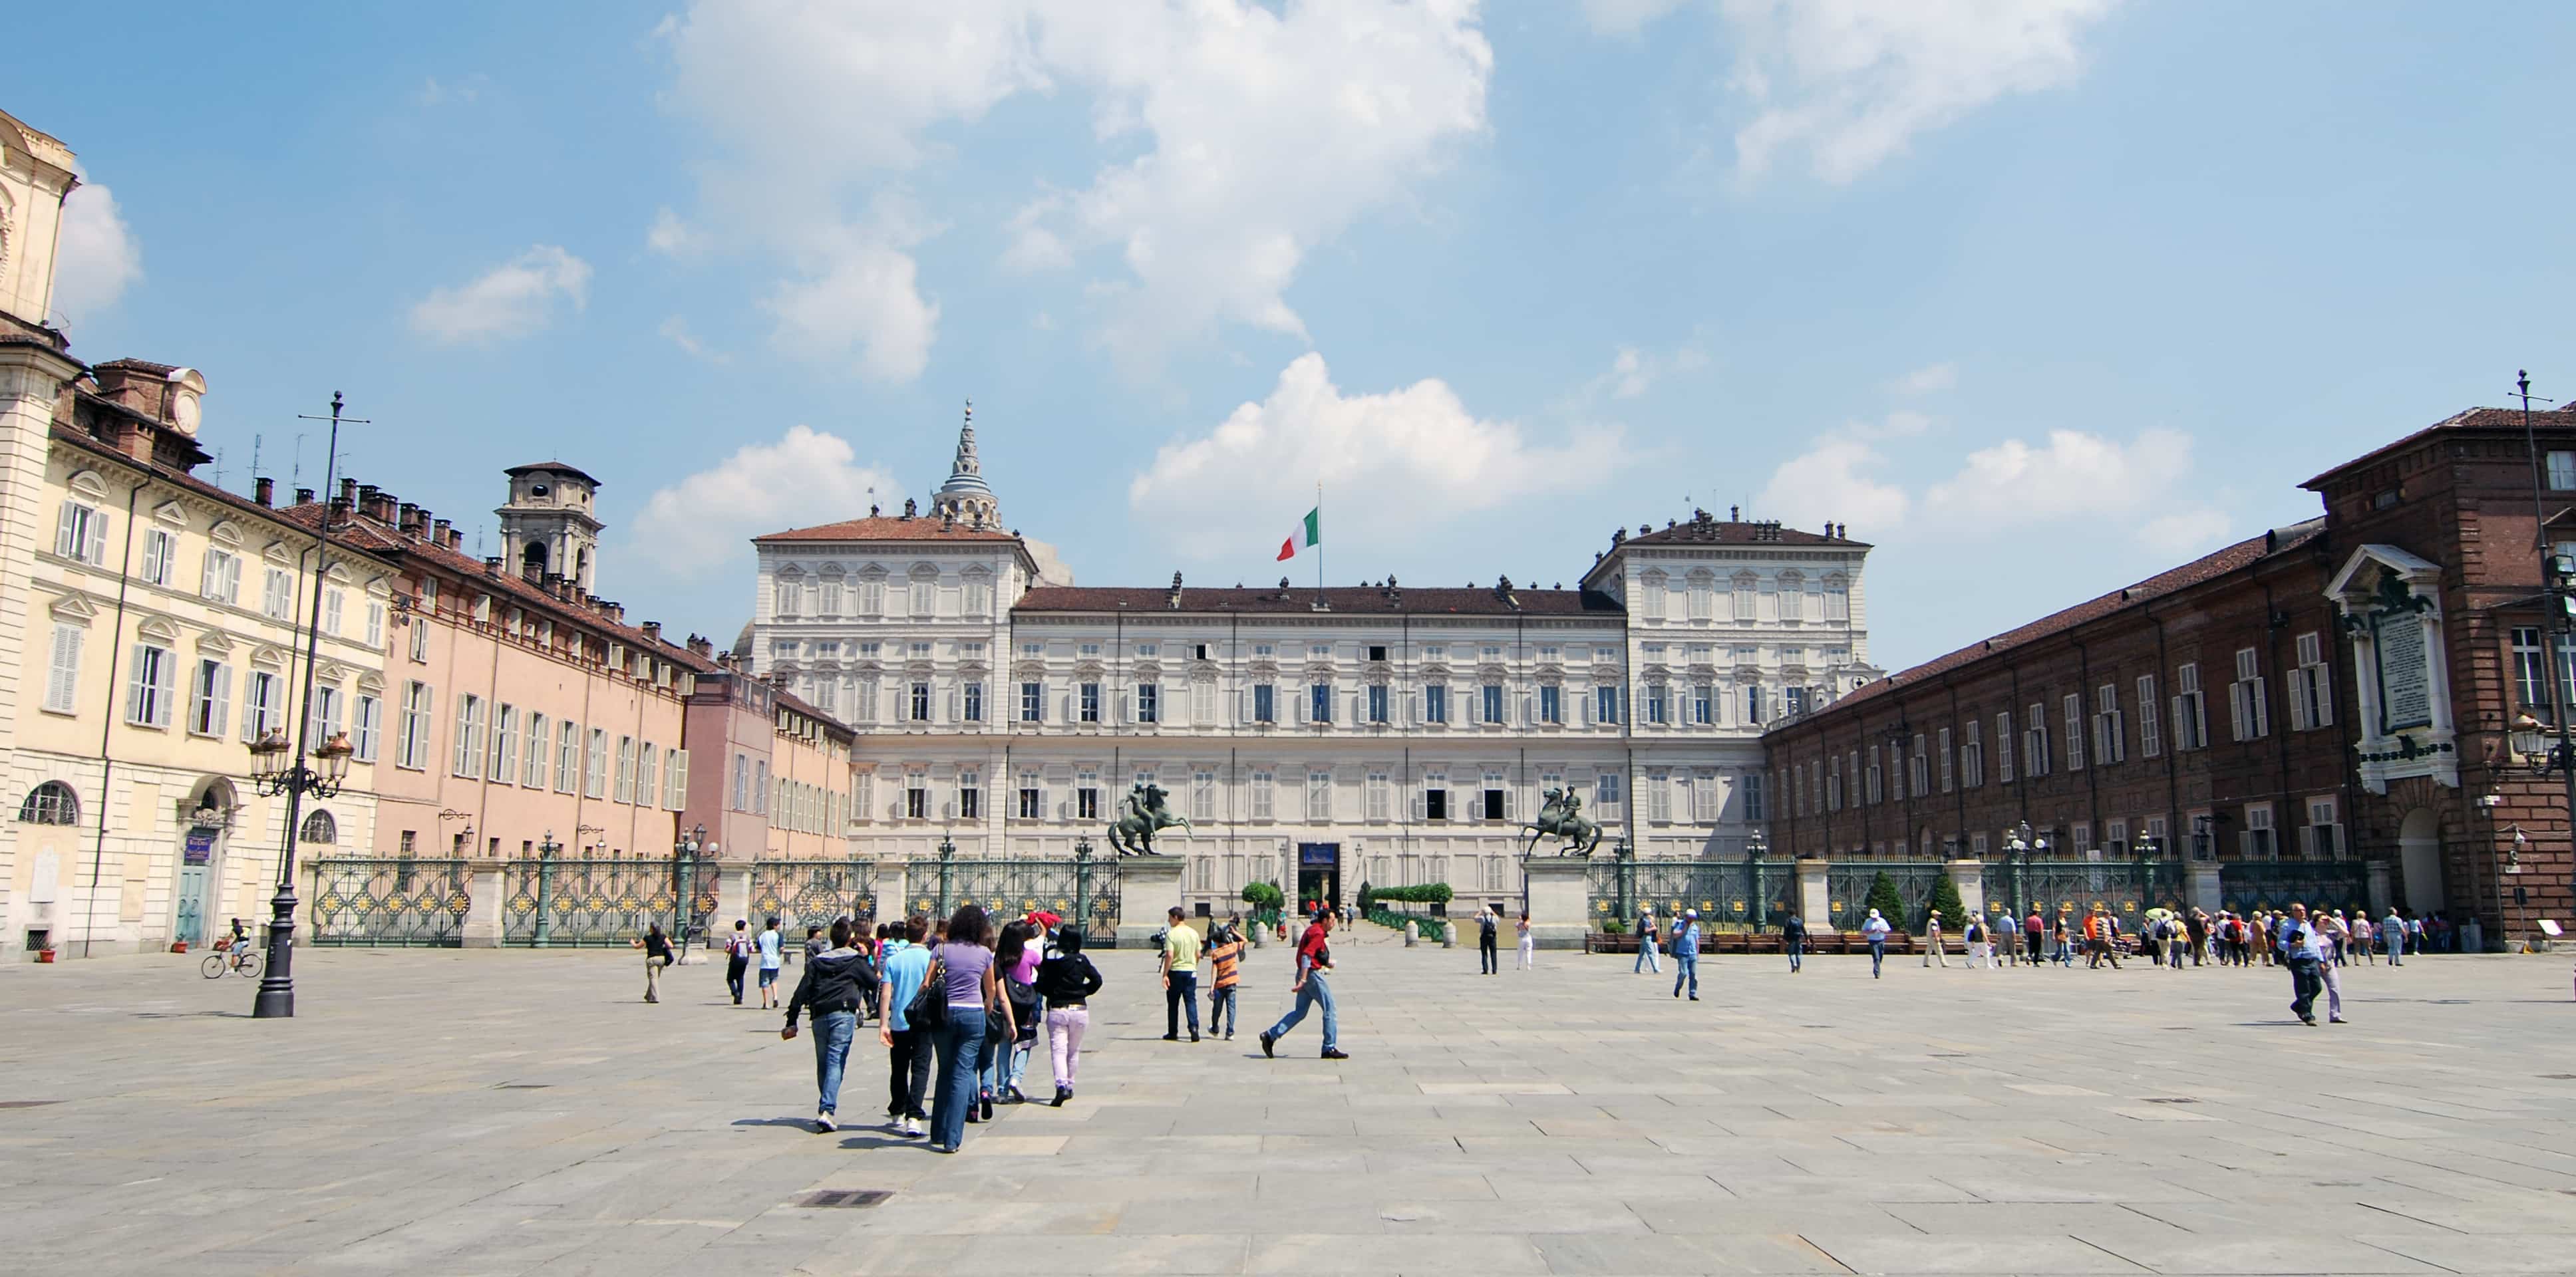 Piazza Costello in Turin